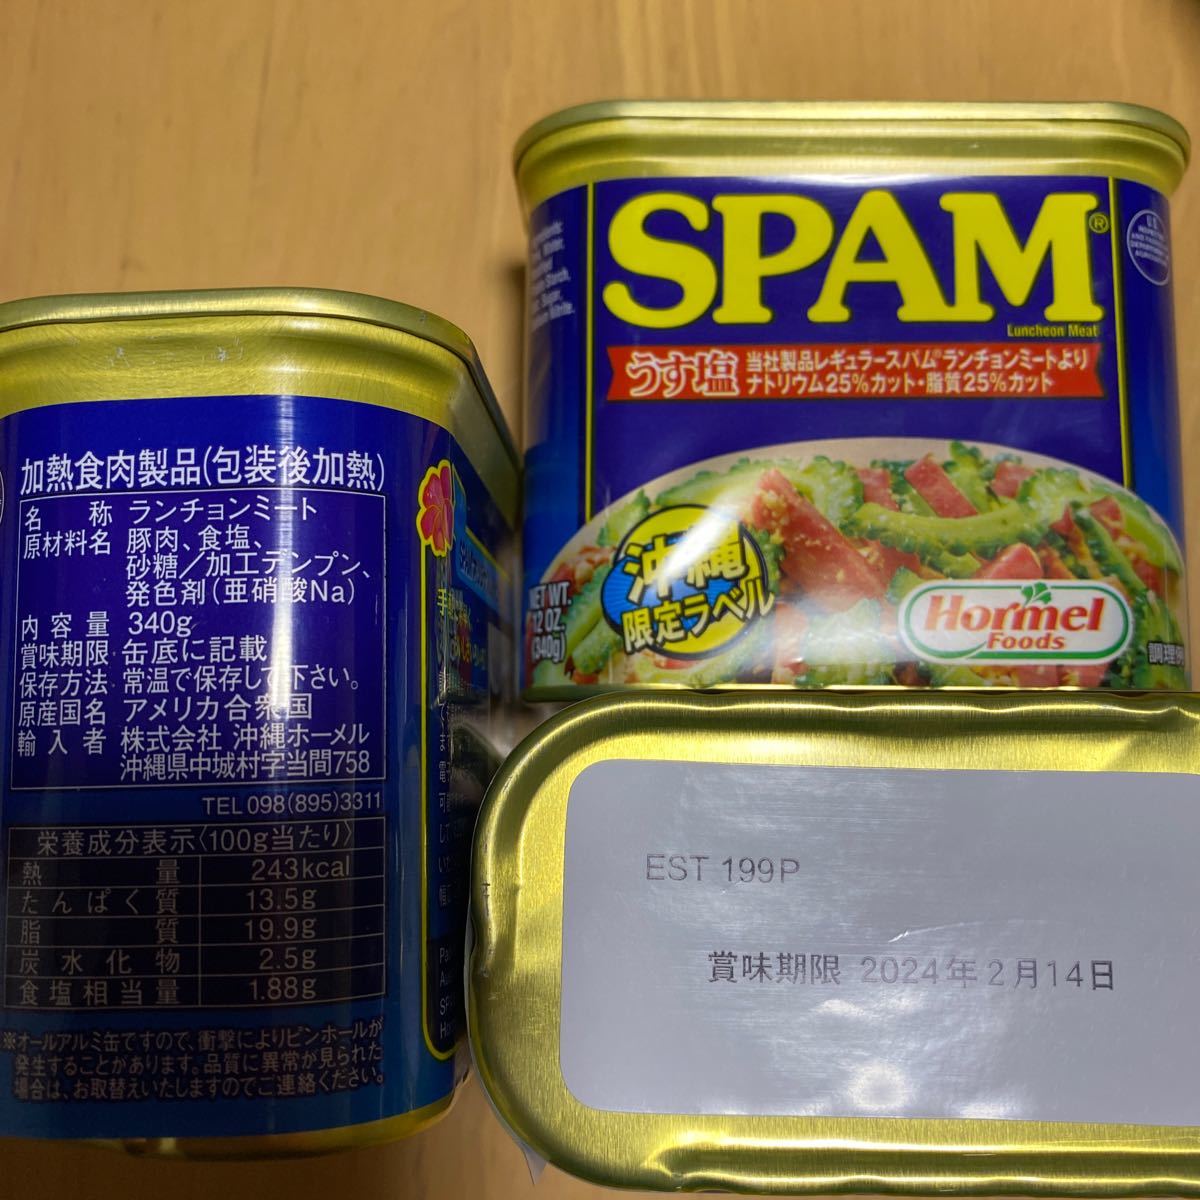 スパム SPAM 缶詰 減塩 沖縄ホーメル 340g×12個 うす塩 レスソルト 在庫限り